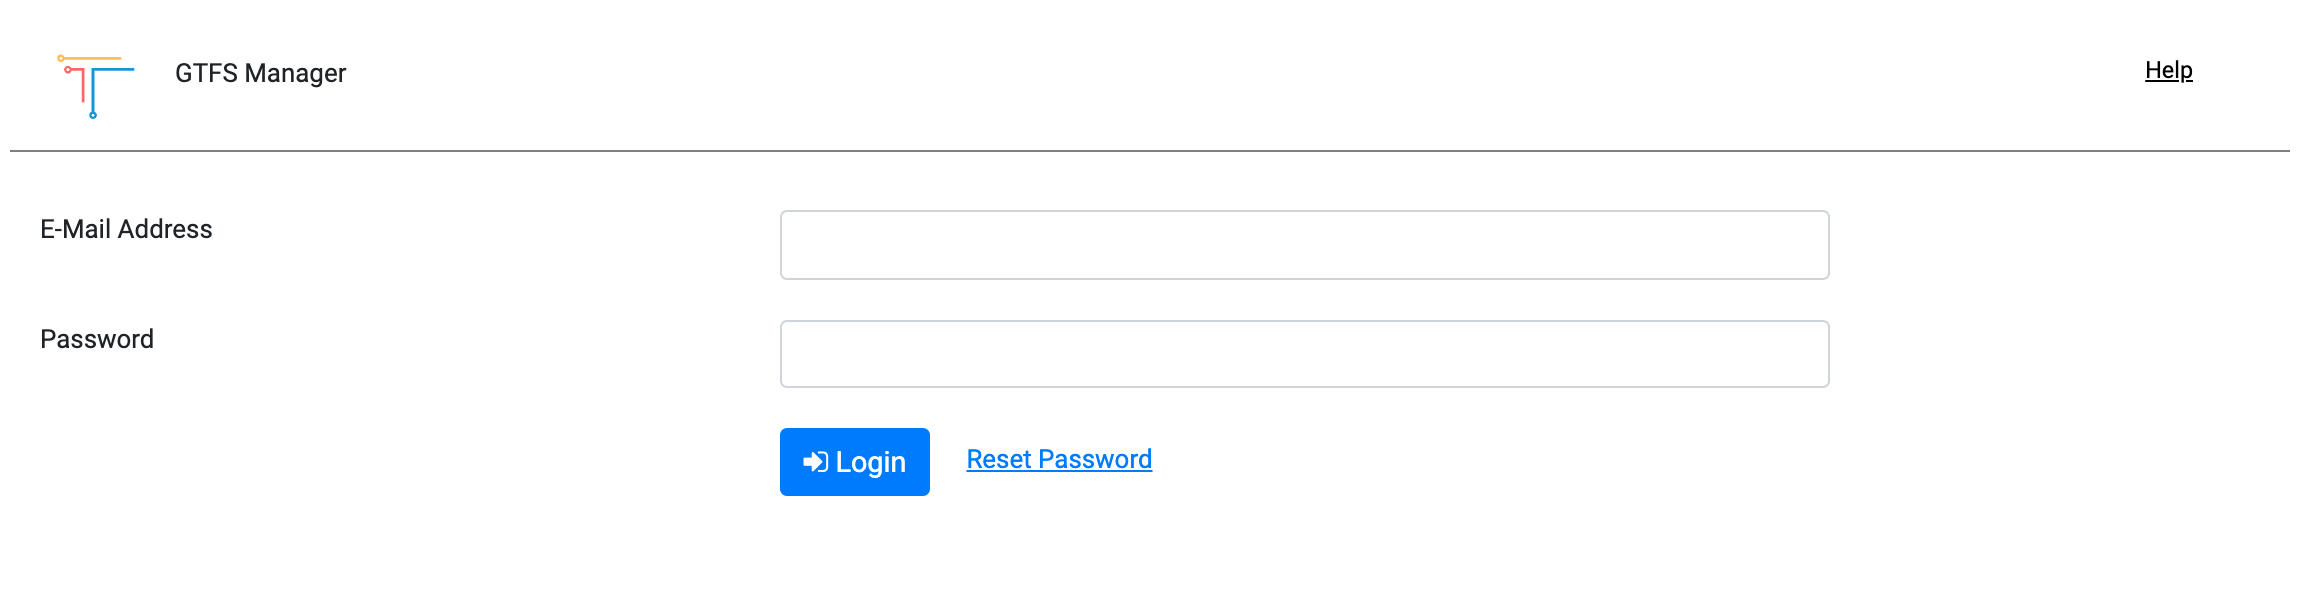 Password_reset_request.png